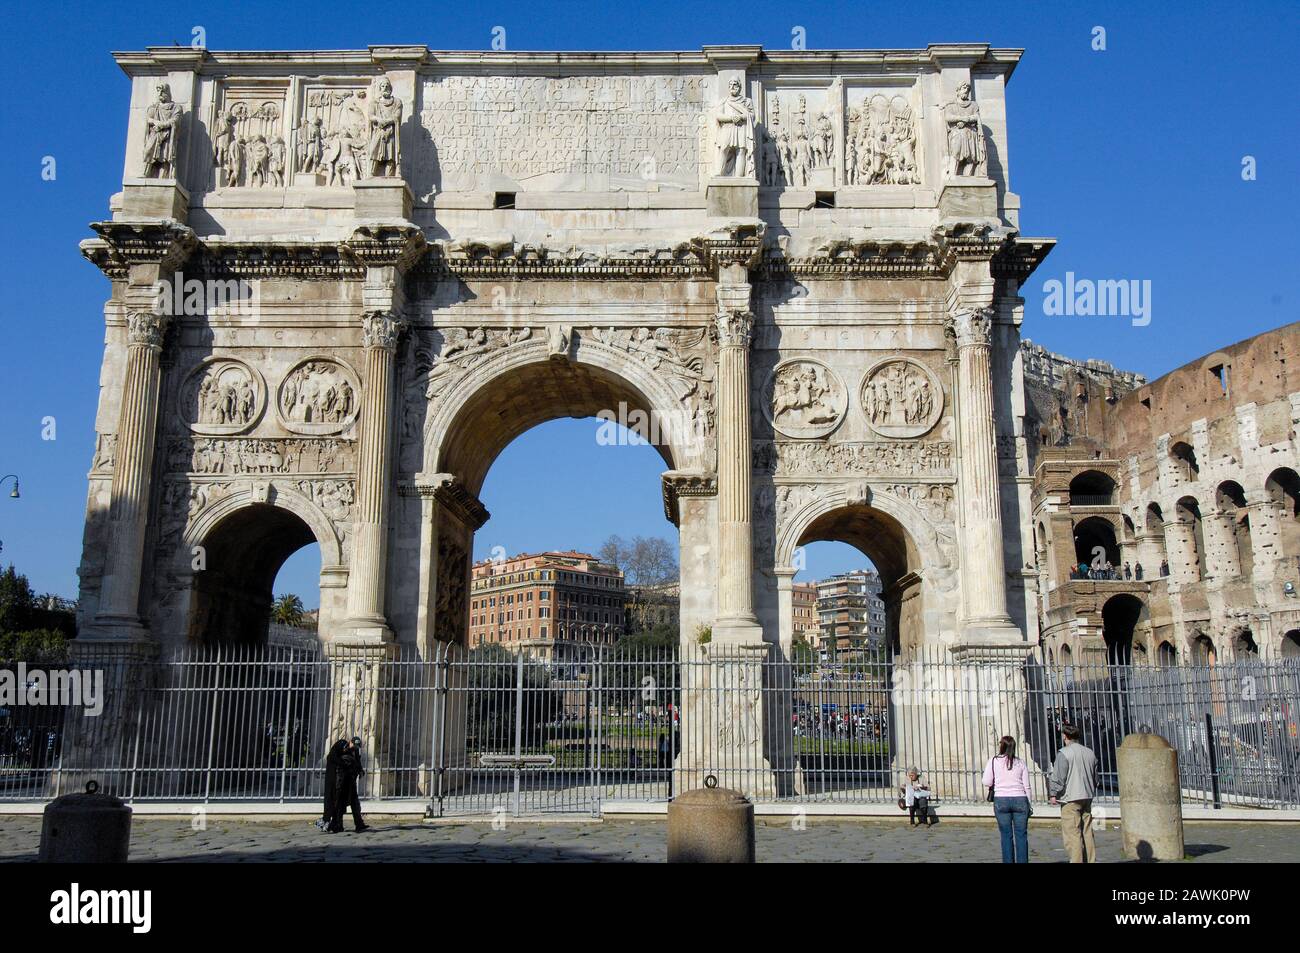 Arch of Emperor Constantine | Triumphbogen von Kaiser Konstantin Stock Photo